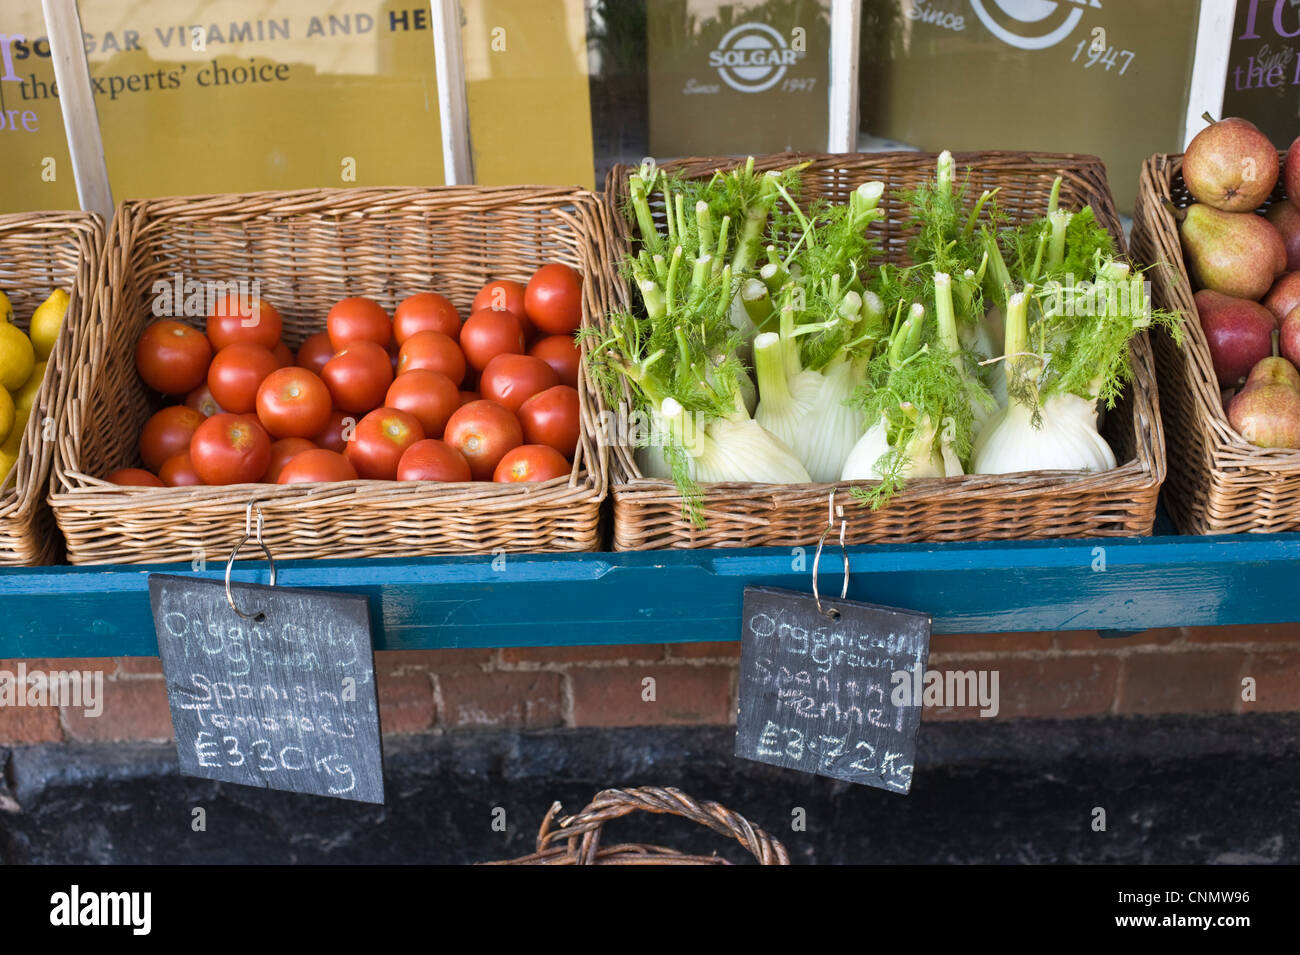 L'Espagnol les tomates et le fenouil en osier à l'extérieur de magasin en centre-ville de Hereford Herefordshire Angleterre UK Banque D'Images